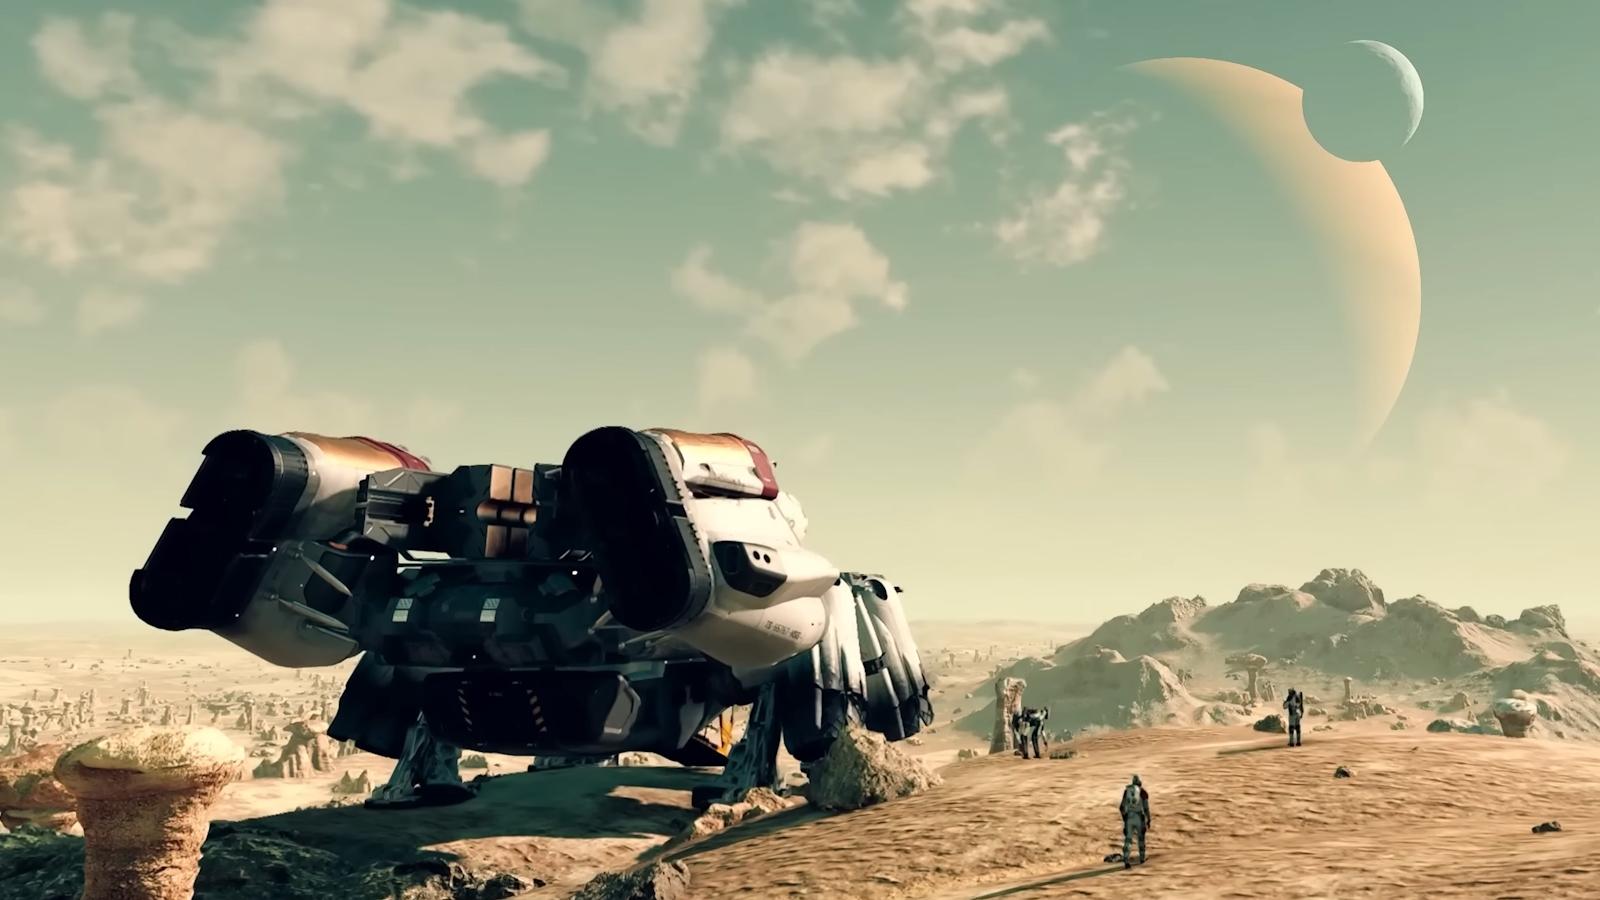 Spaceship landing on alien planet in Starfield May Update.